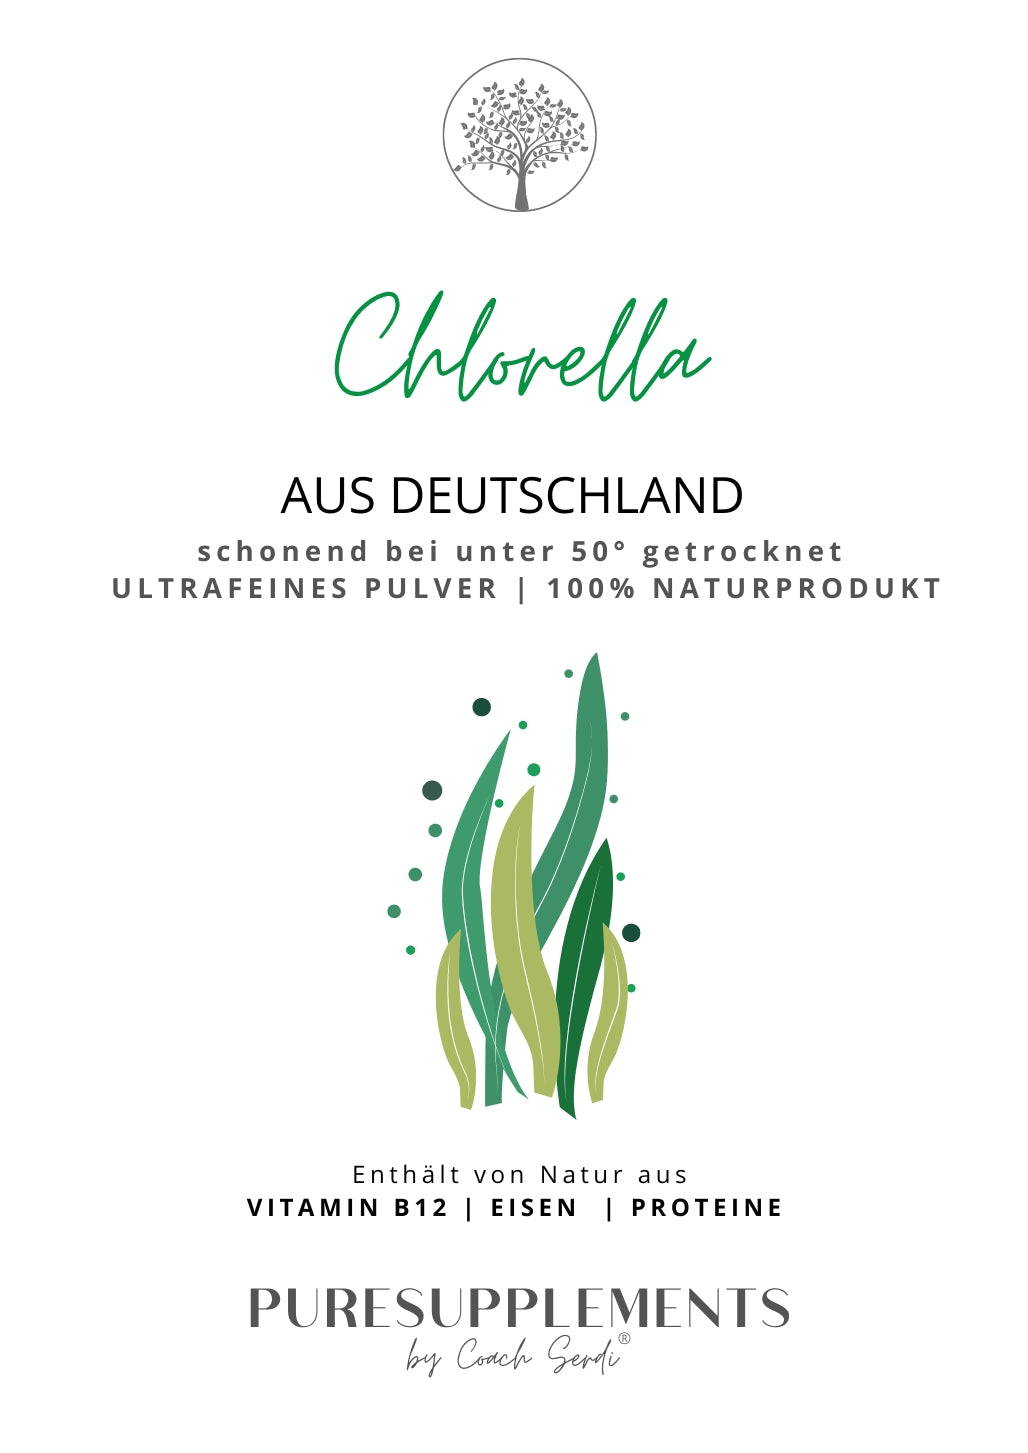 Premium deutsche Chlorella Pulver 100% Rohkost (Regional, biologisch hohe Reinheit, 150g)